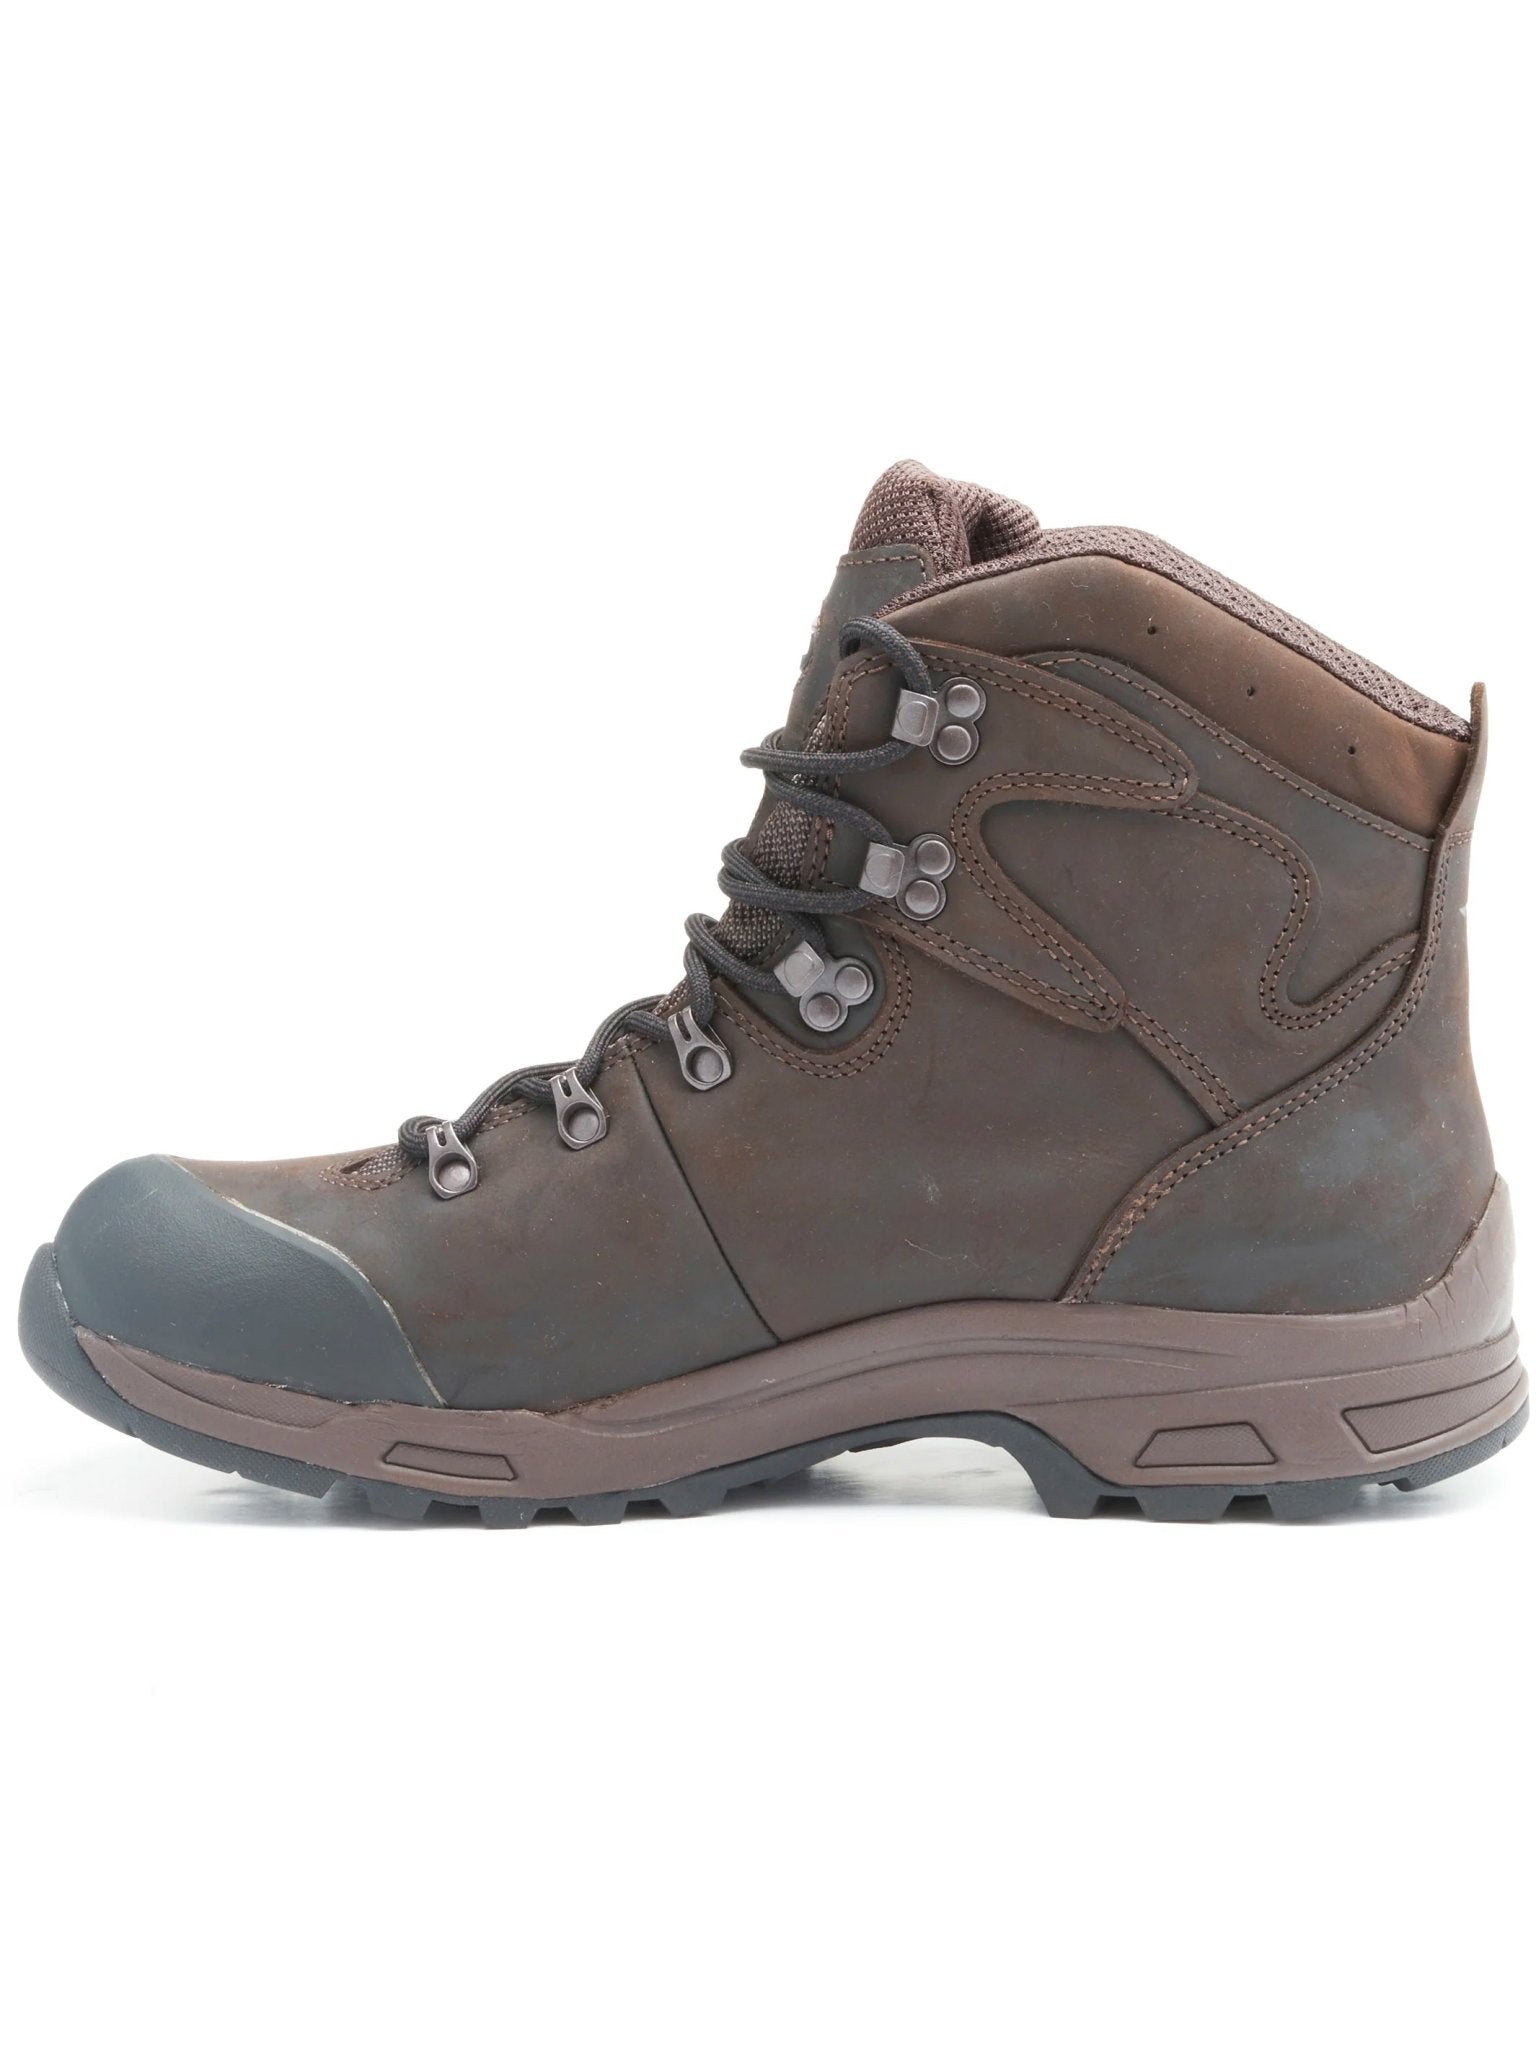 Treksta Treksta - Gore - Tex Waterproof Heathfield 6" Lace up Leather boot, with Nestfit / Icelock Boots